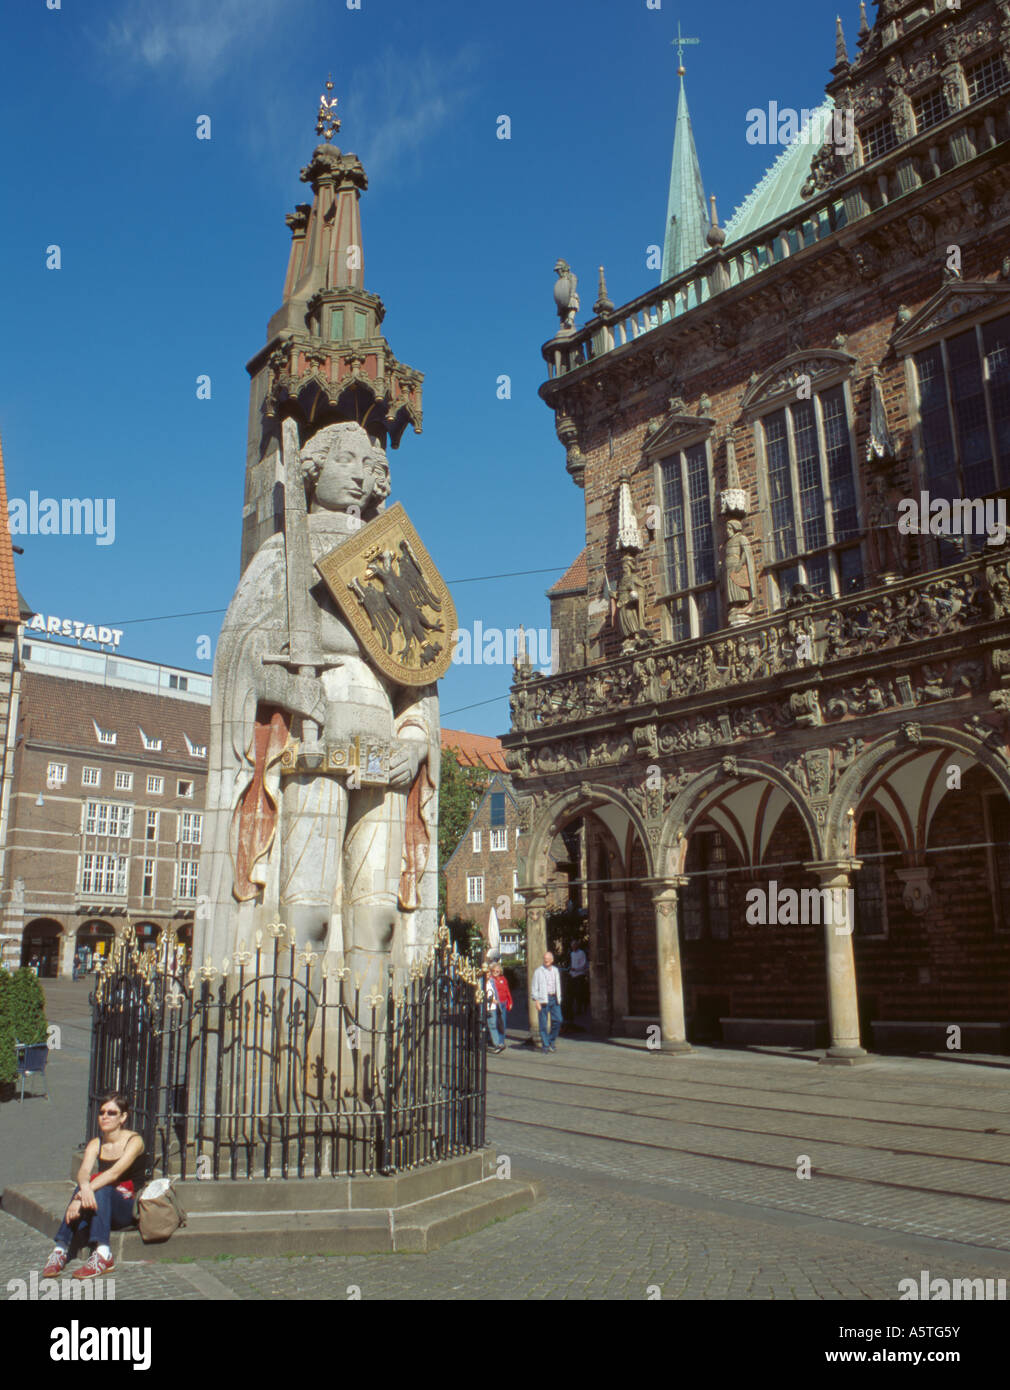 Statue of Roland with Rathaus (Town Hall) beyond, Marktplatz (Market ...